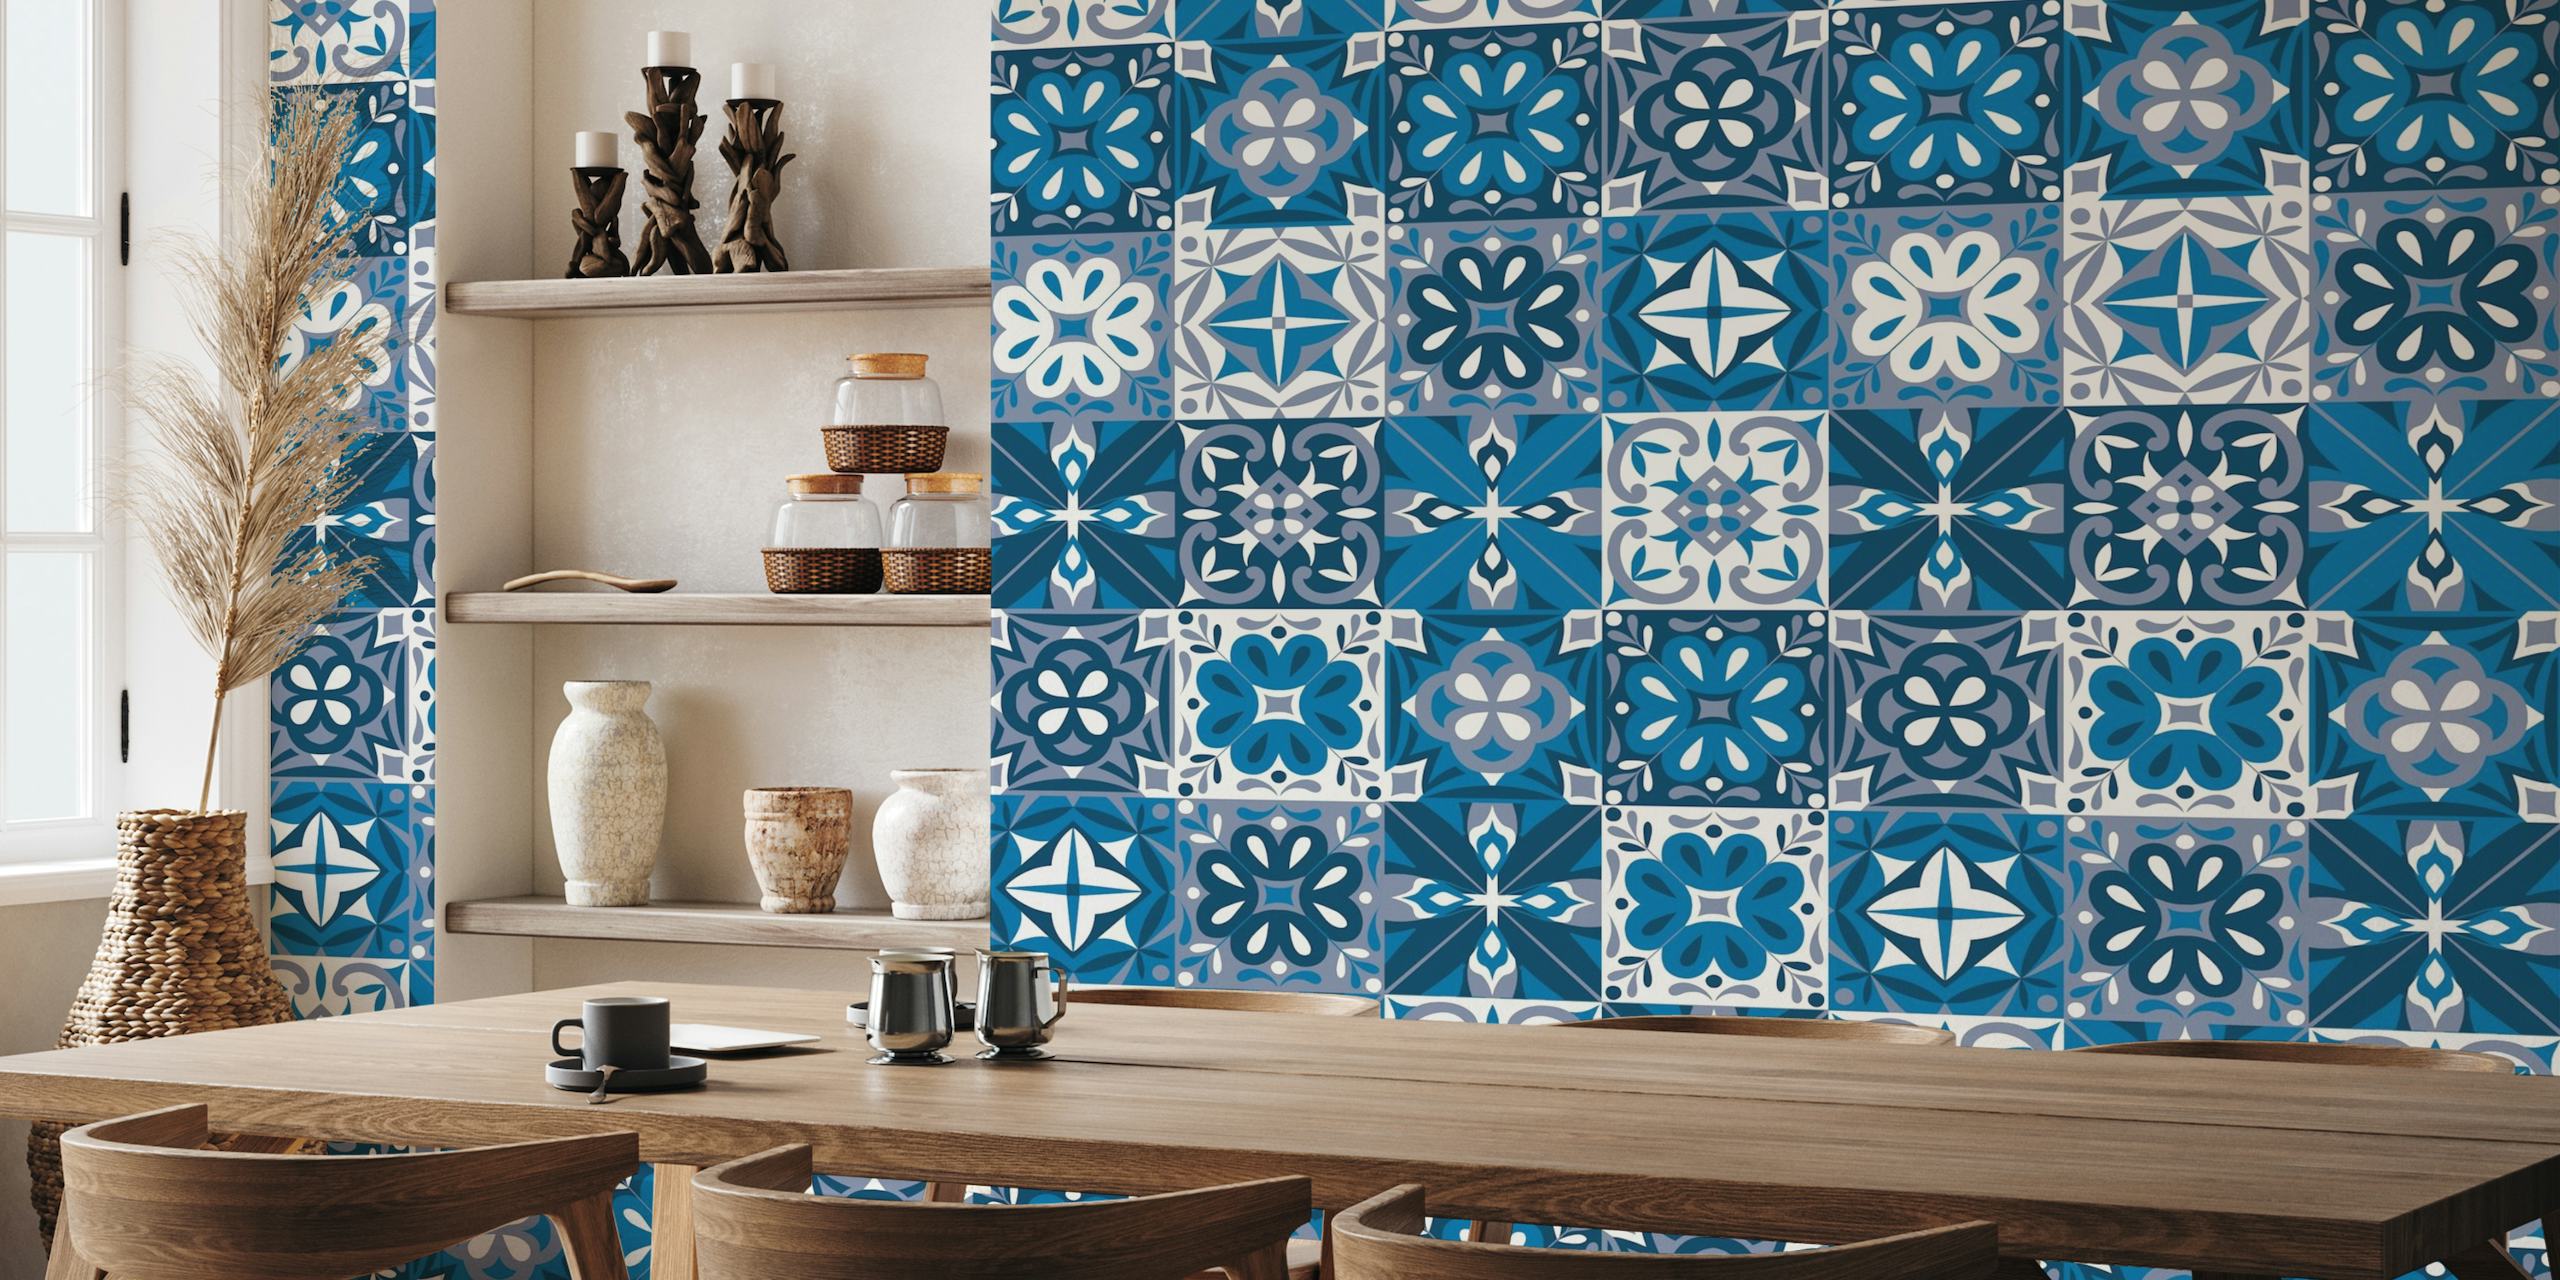 Patrón de azulejo portugués en azul y blanco en un mural de pared